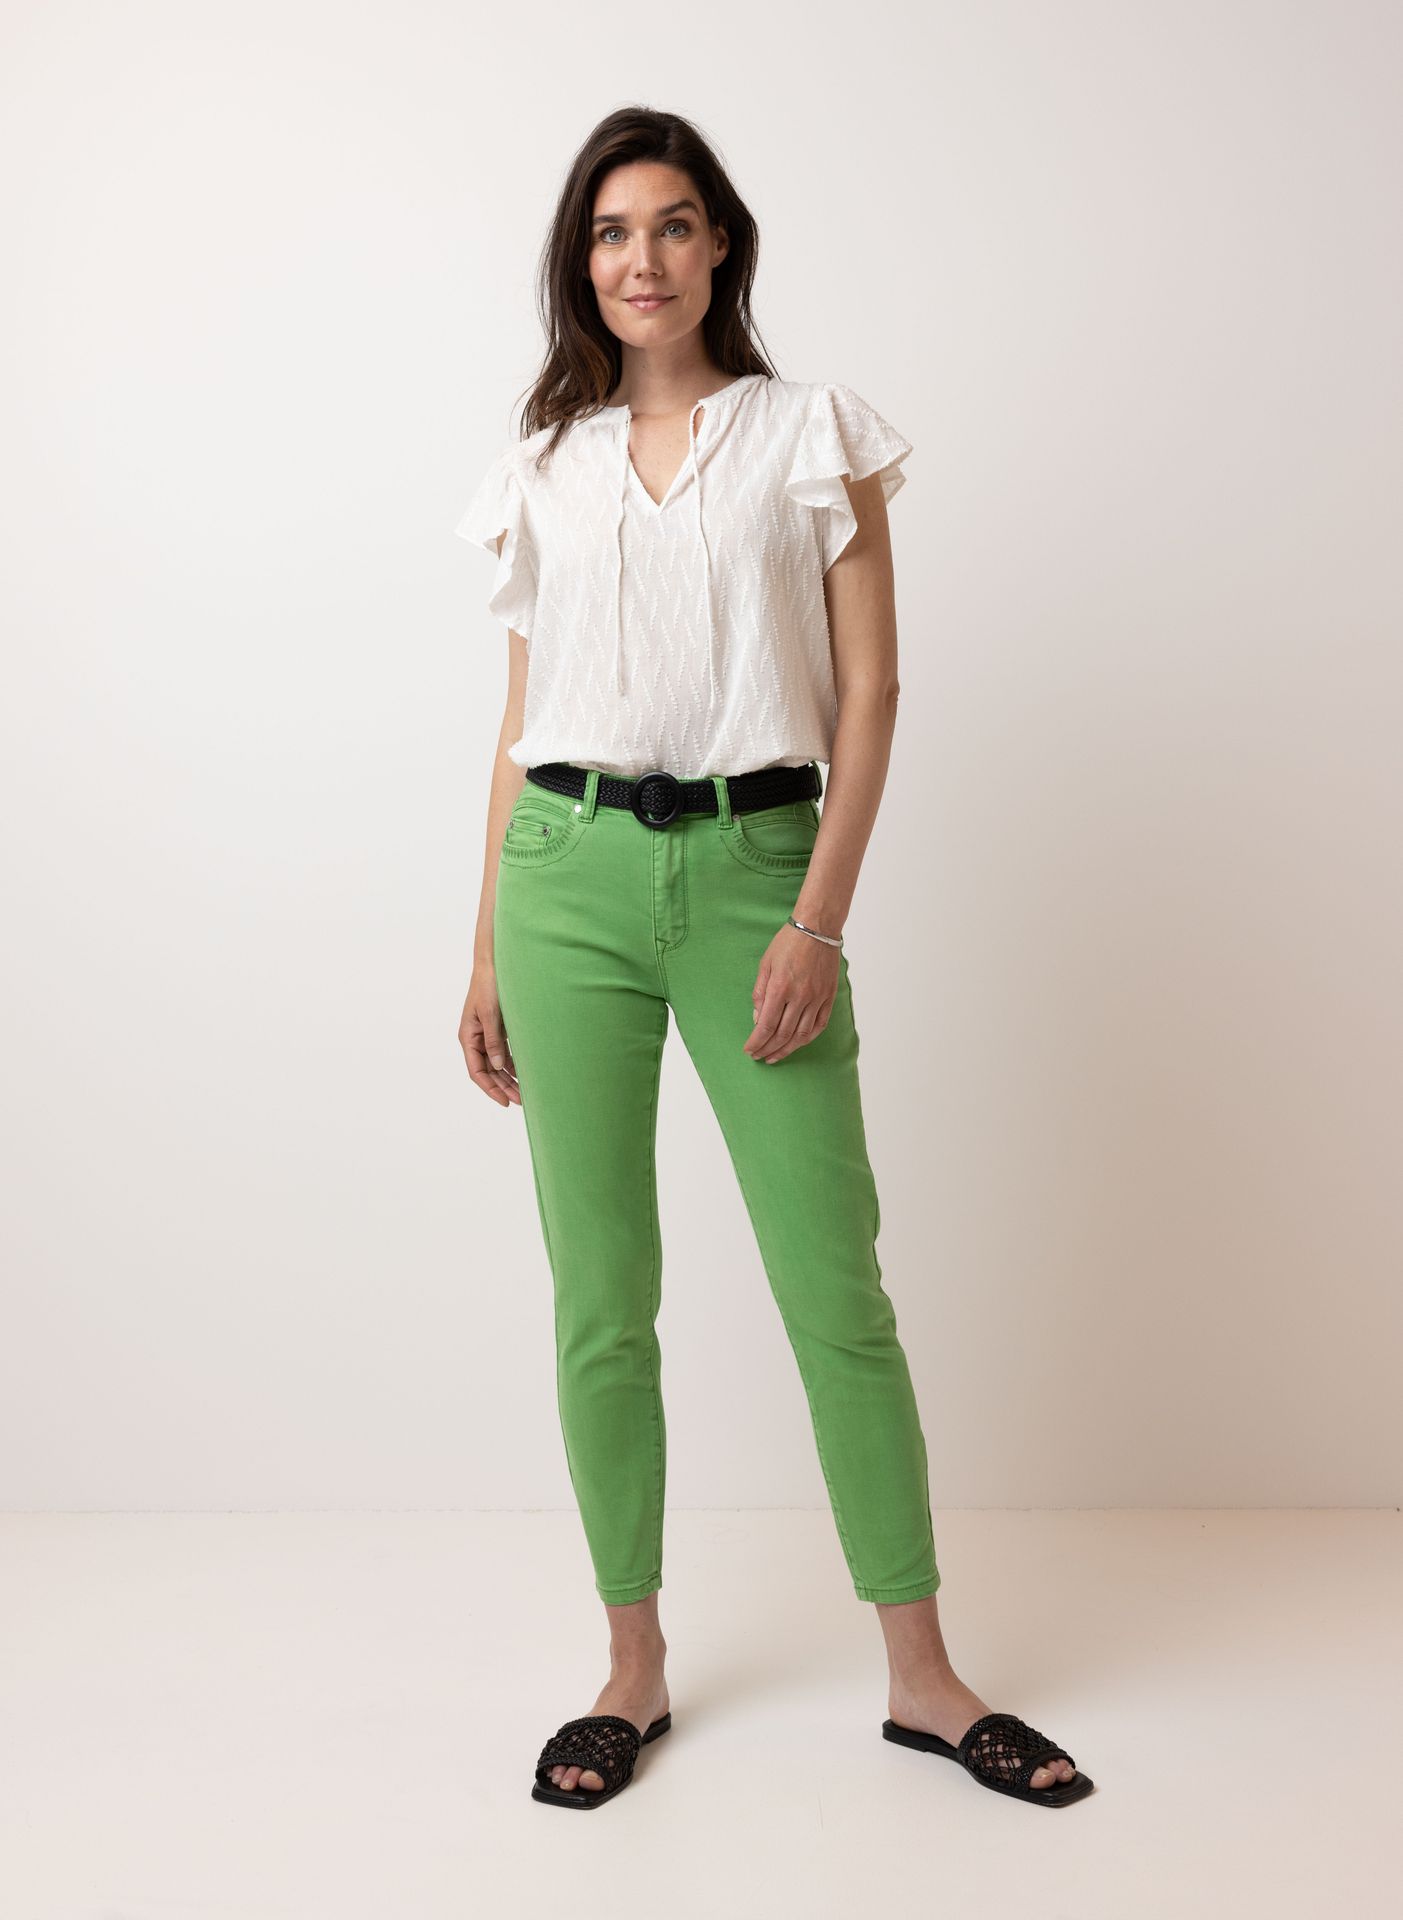 Norah Groene denim jeans green 213891-500